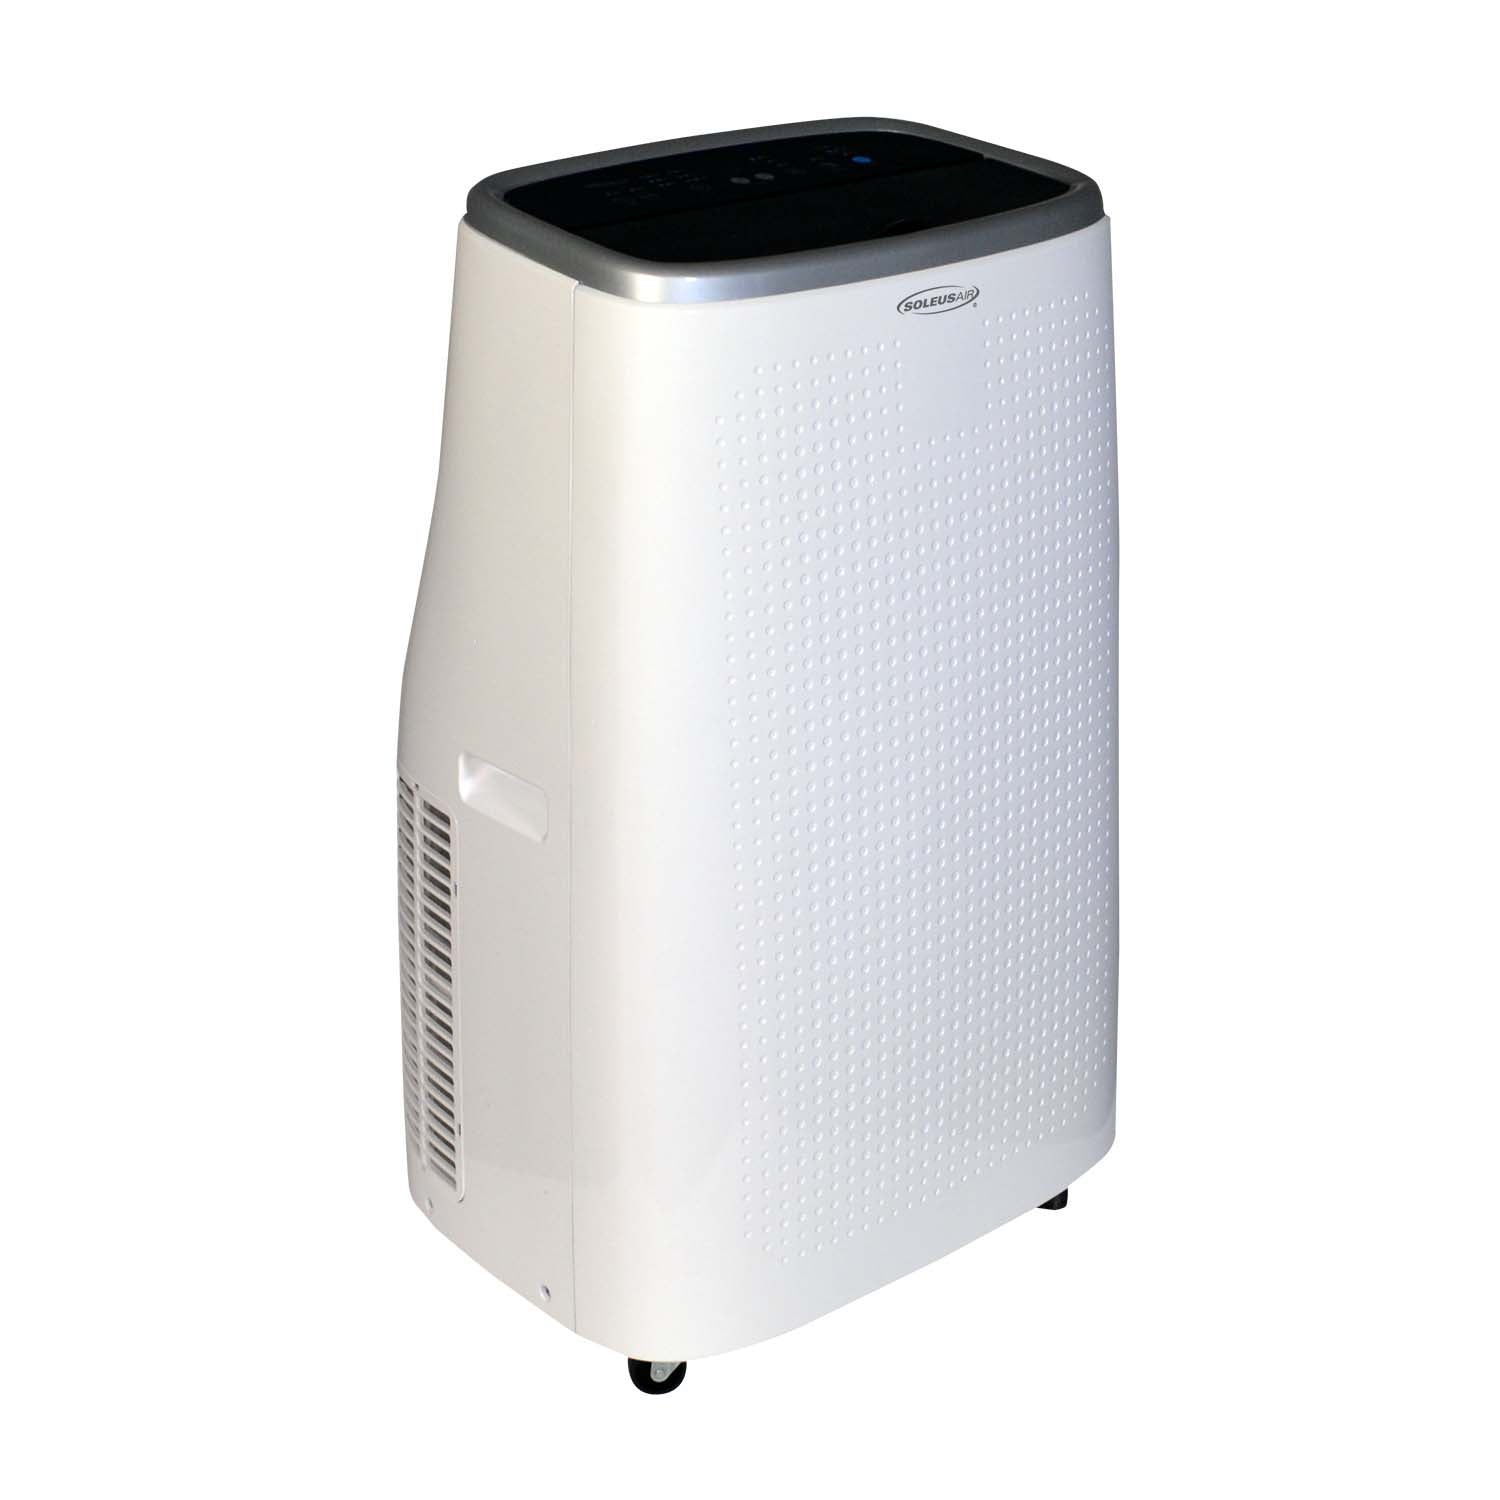 Soleus Air 12,000 BTU/8,000 BTU DOE Portable Air Conditioner